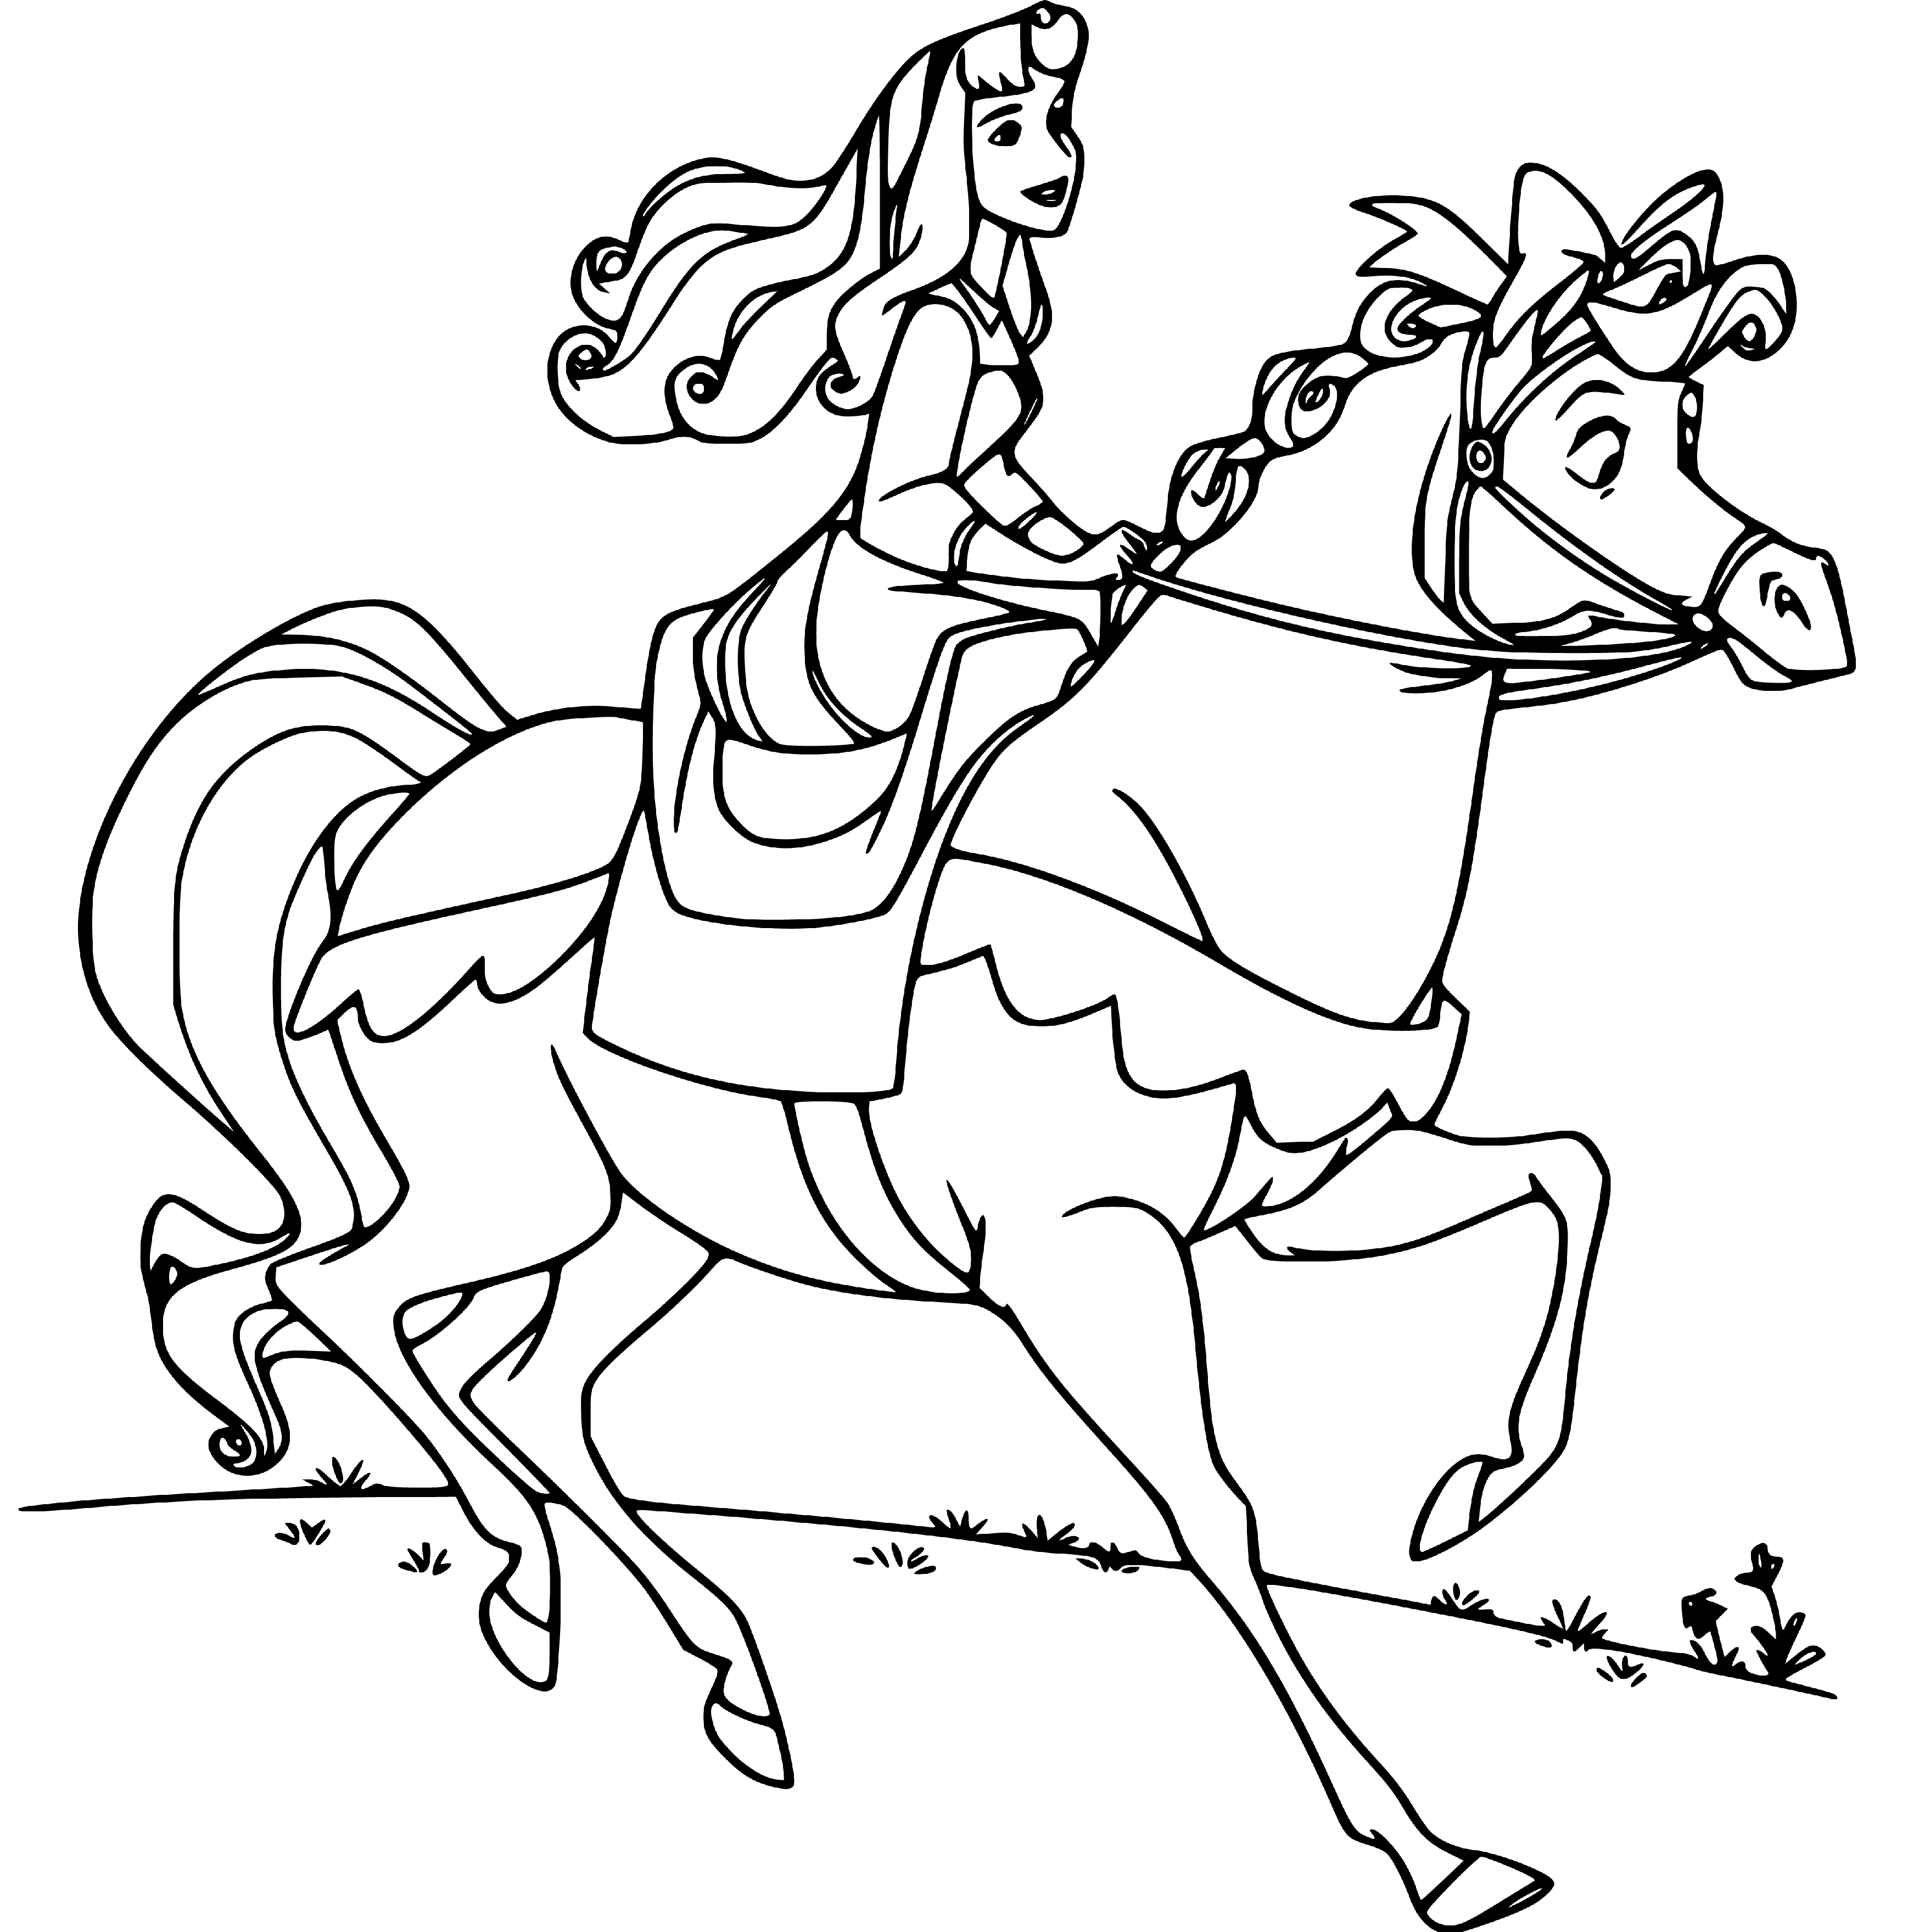 Princess Aurora riding a Horse Coloring Page for Children - SheetalColor.com